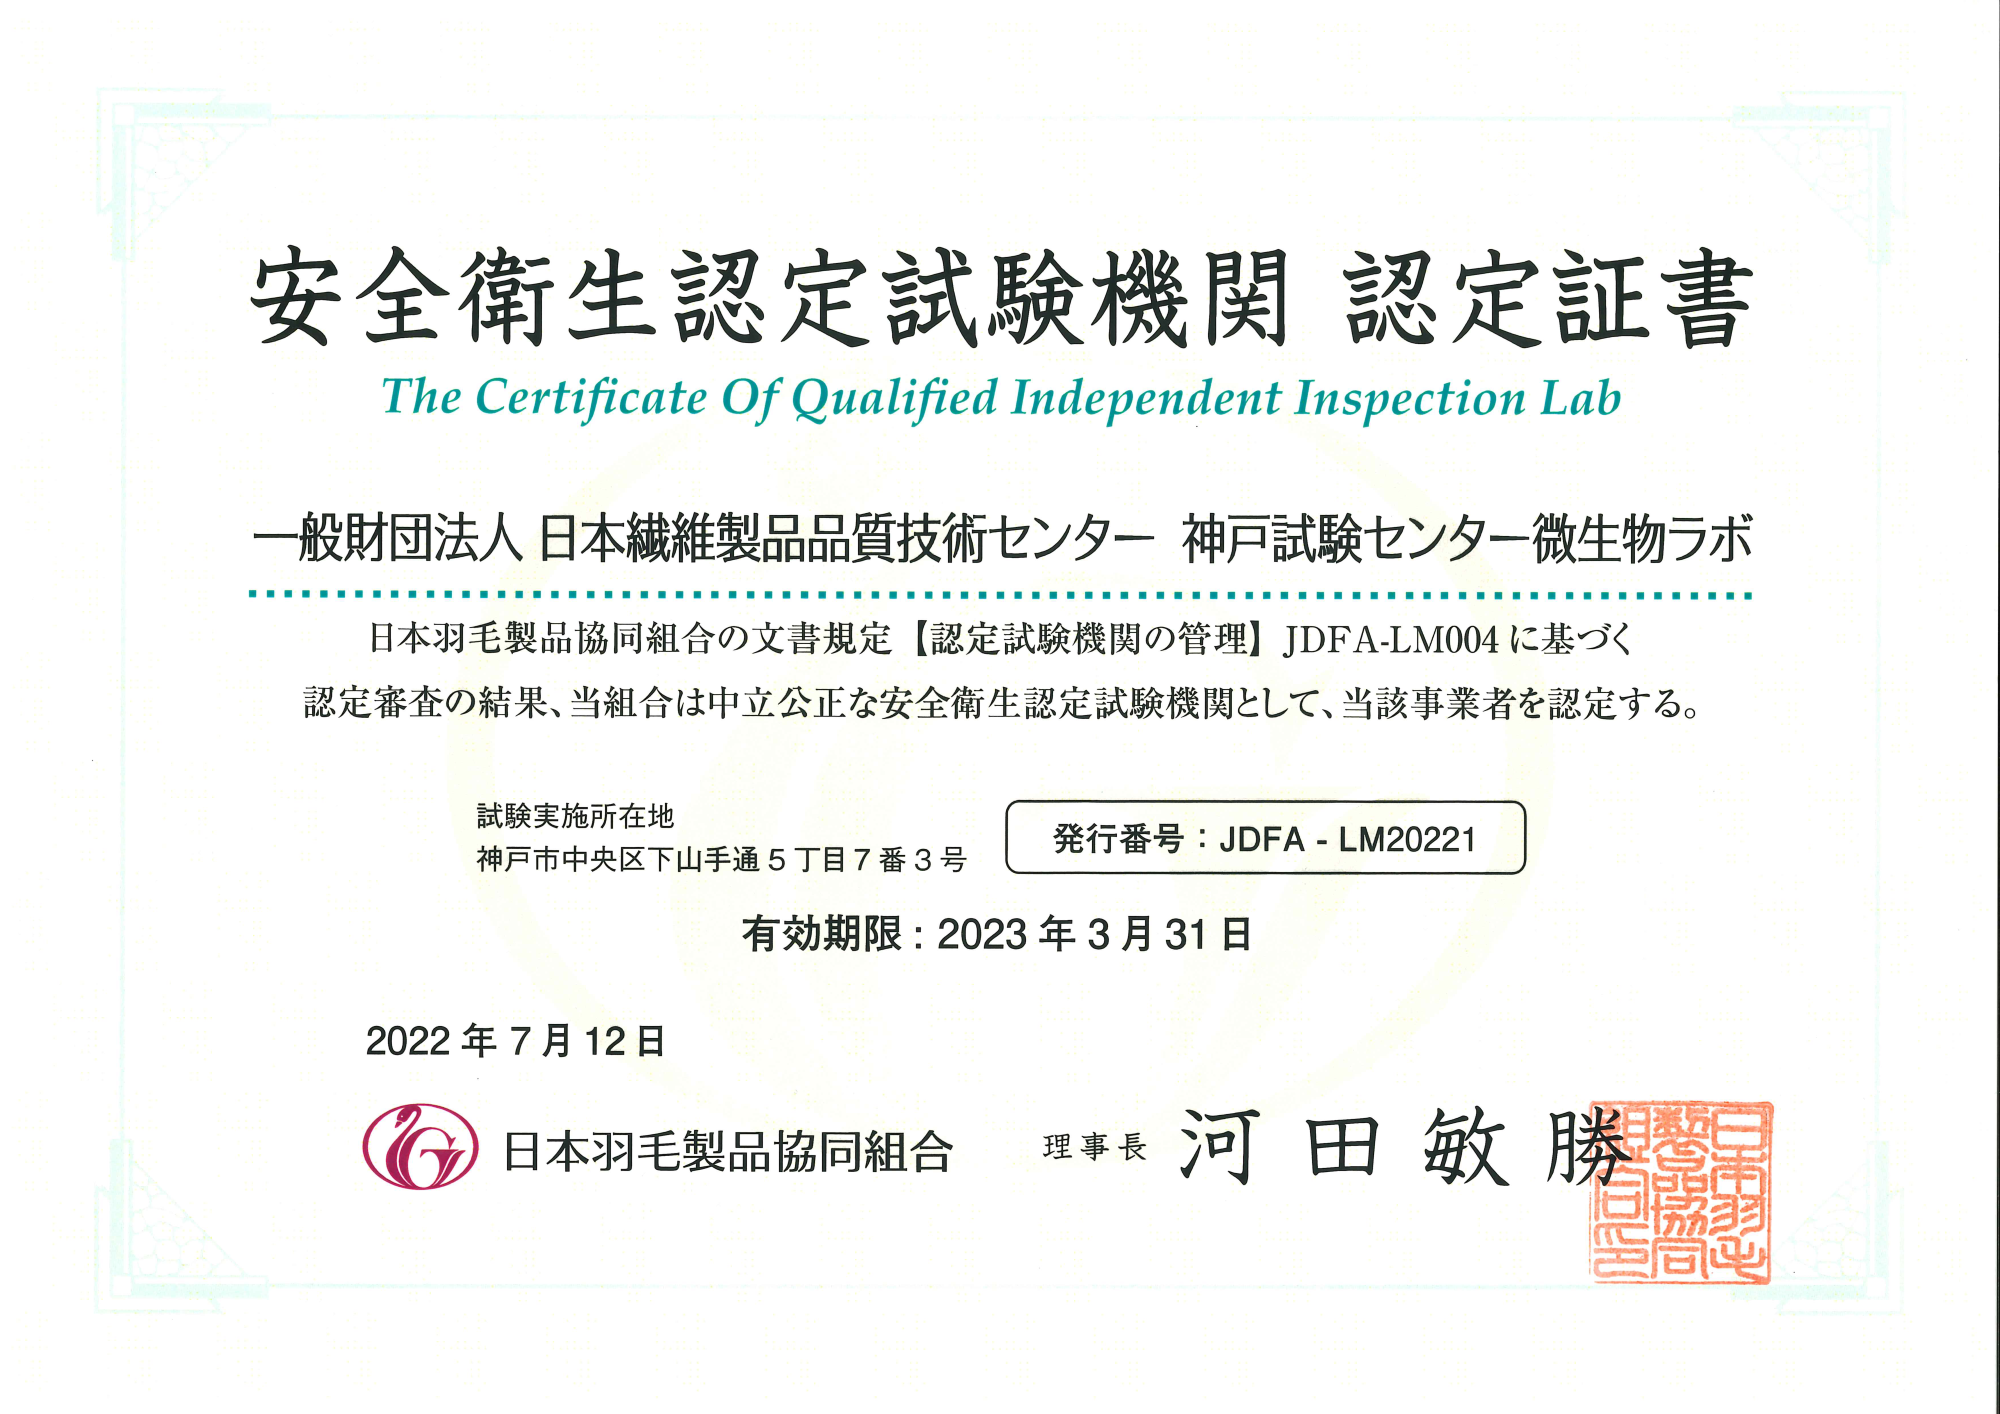 日本繊維製品品質技術センター 安全衛生試験 認定証書